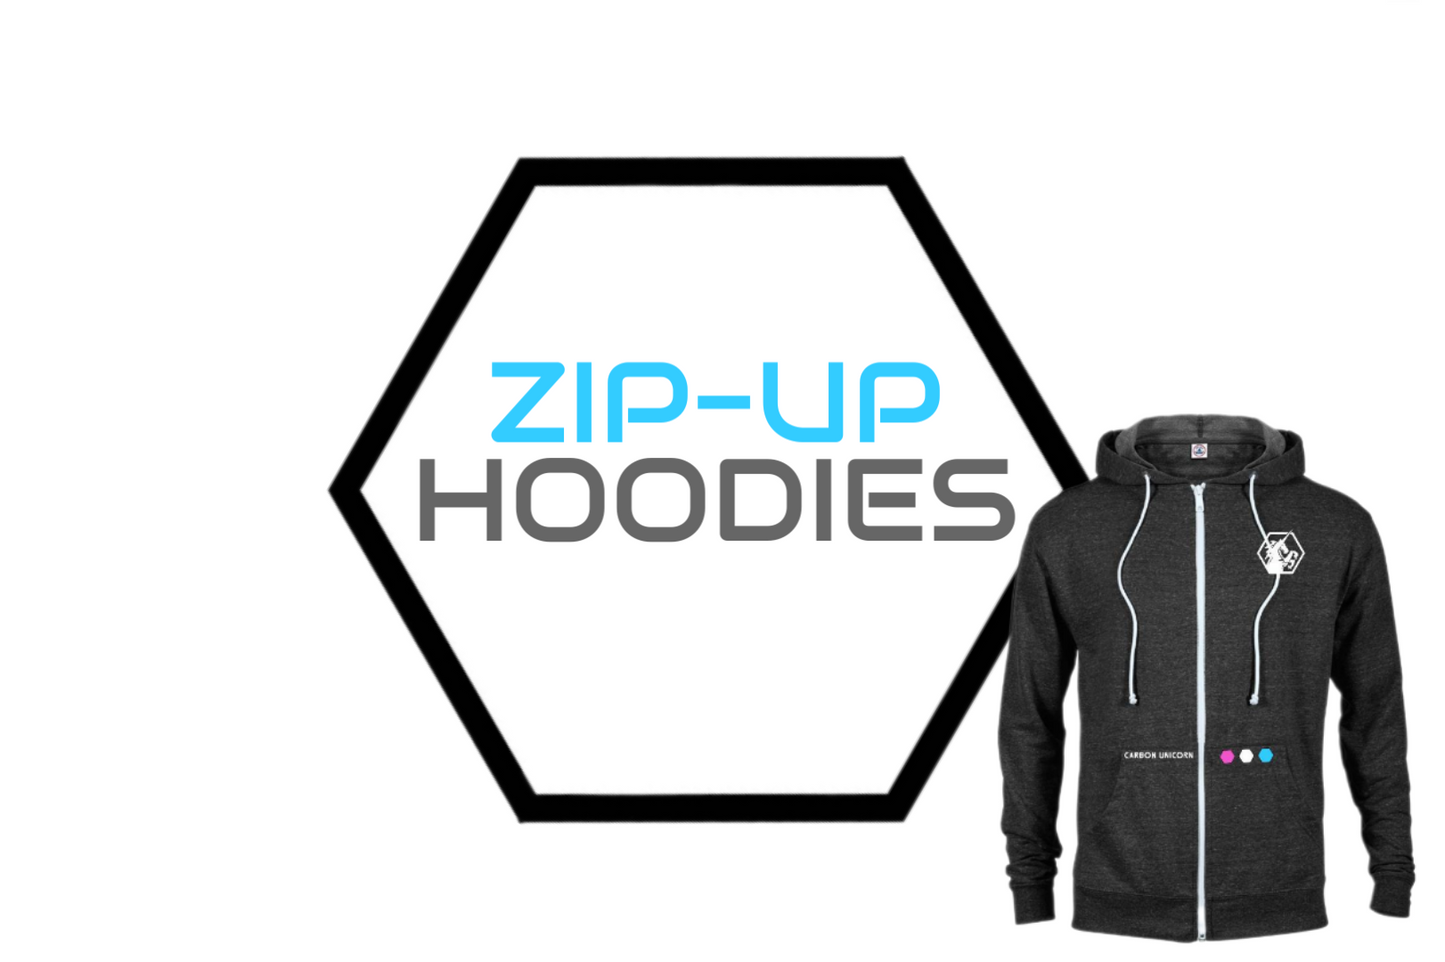 Zip-Up Hoodies